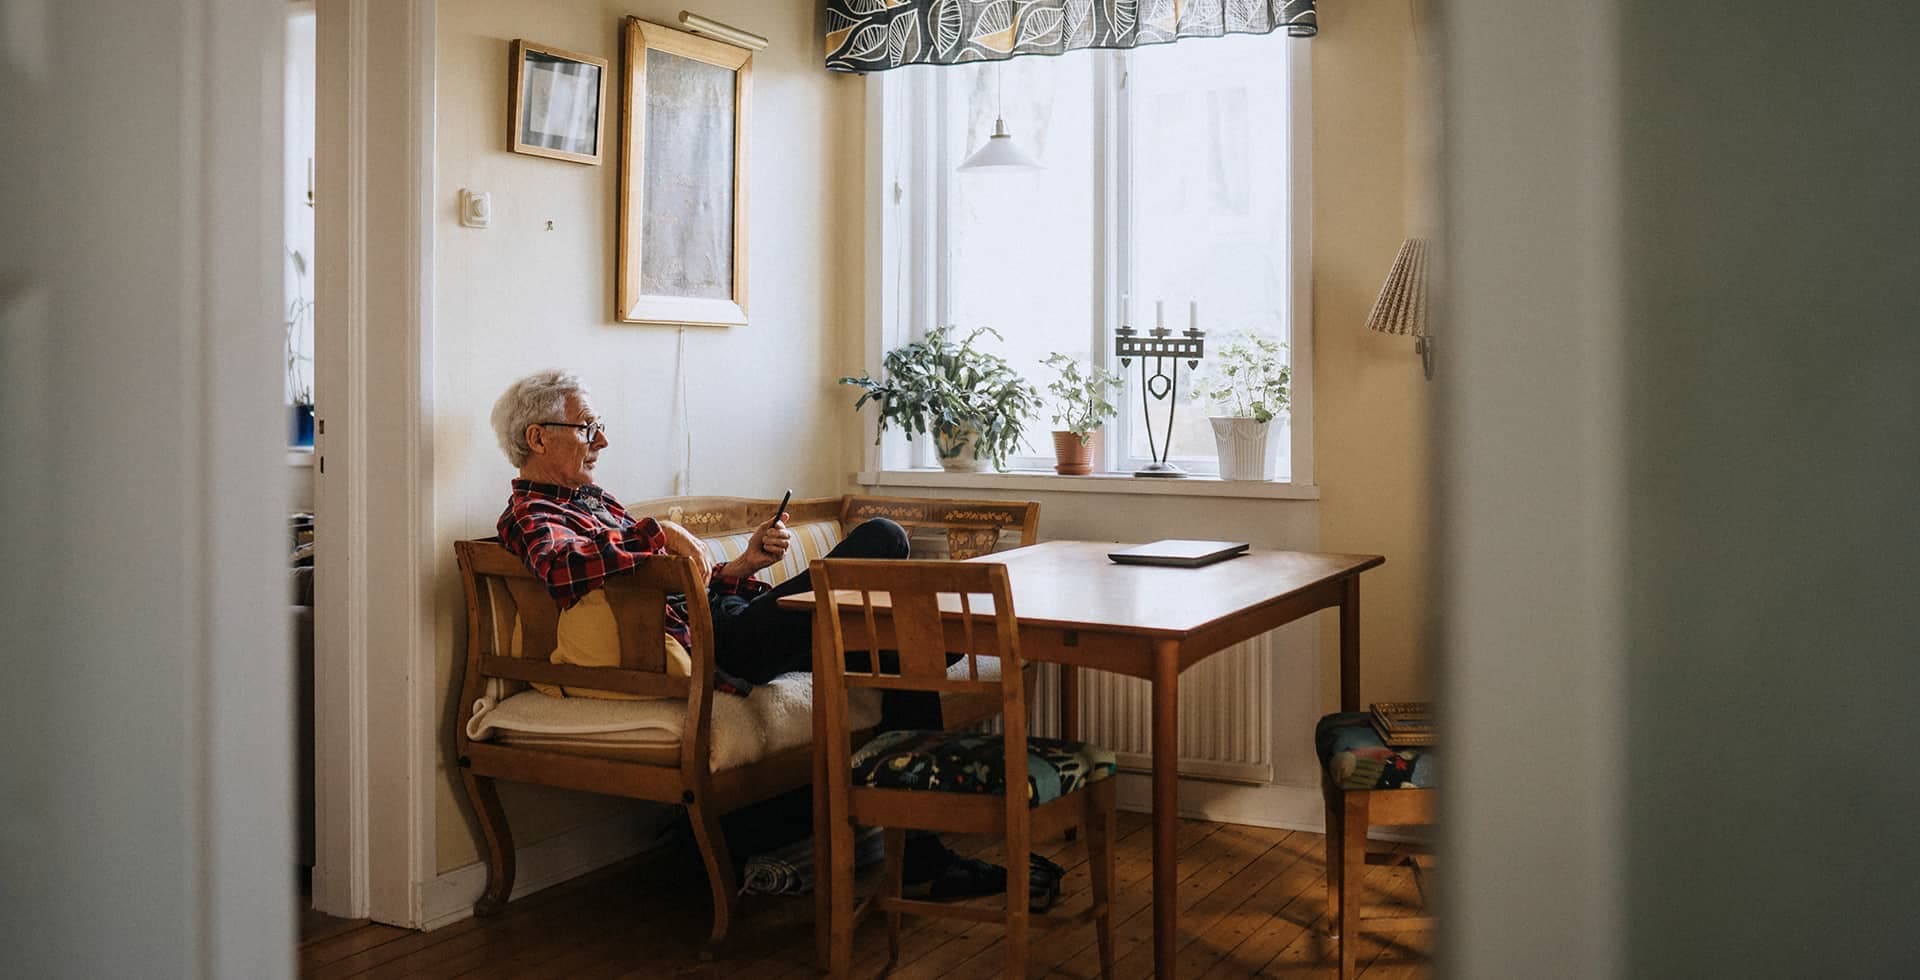 En bild på en äldre man som sitter ensam med sin telefon vid ett köksbord.